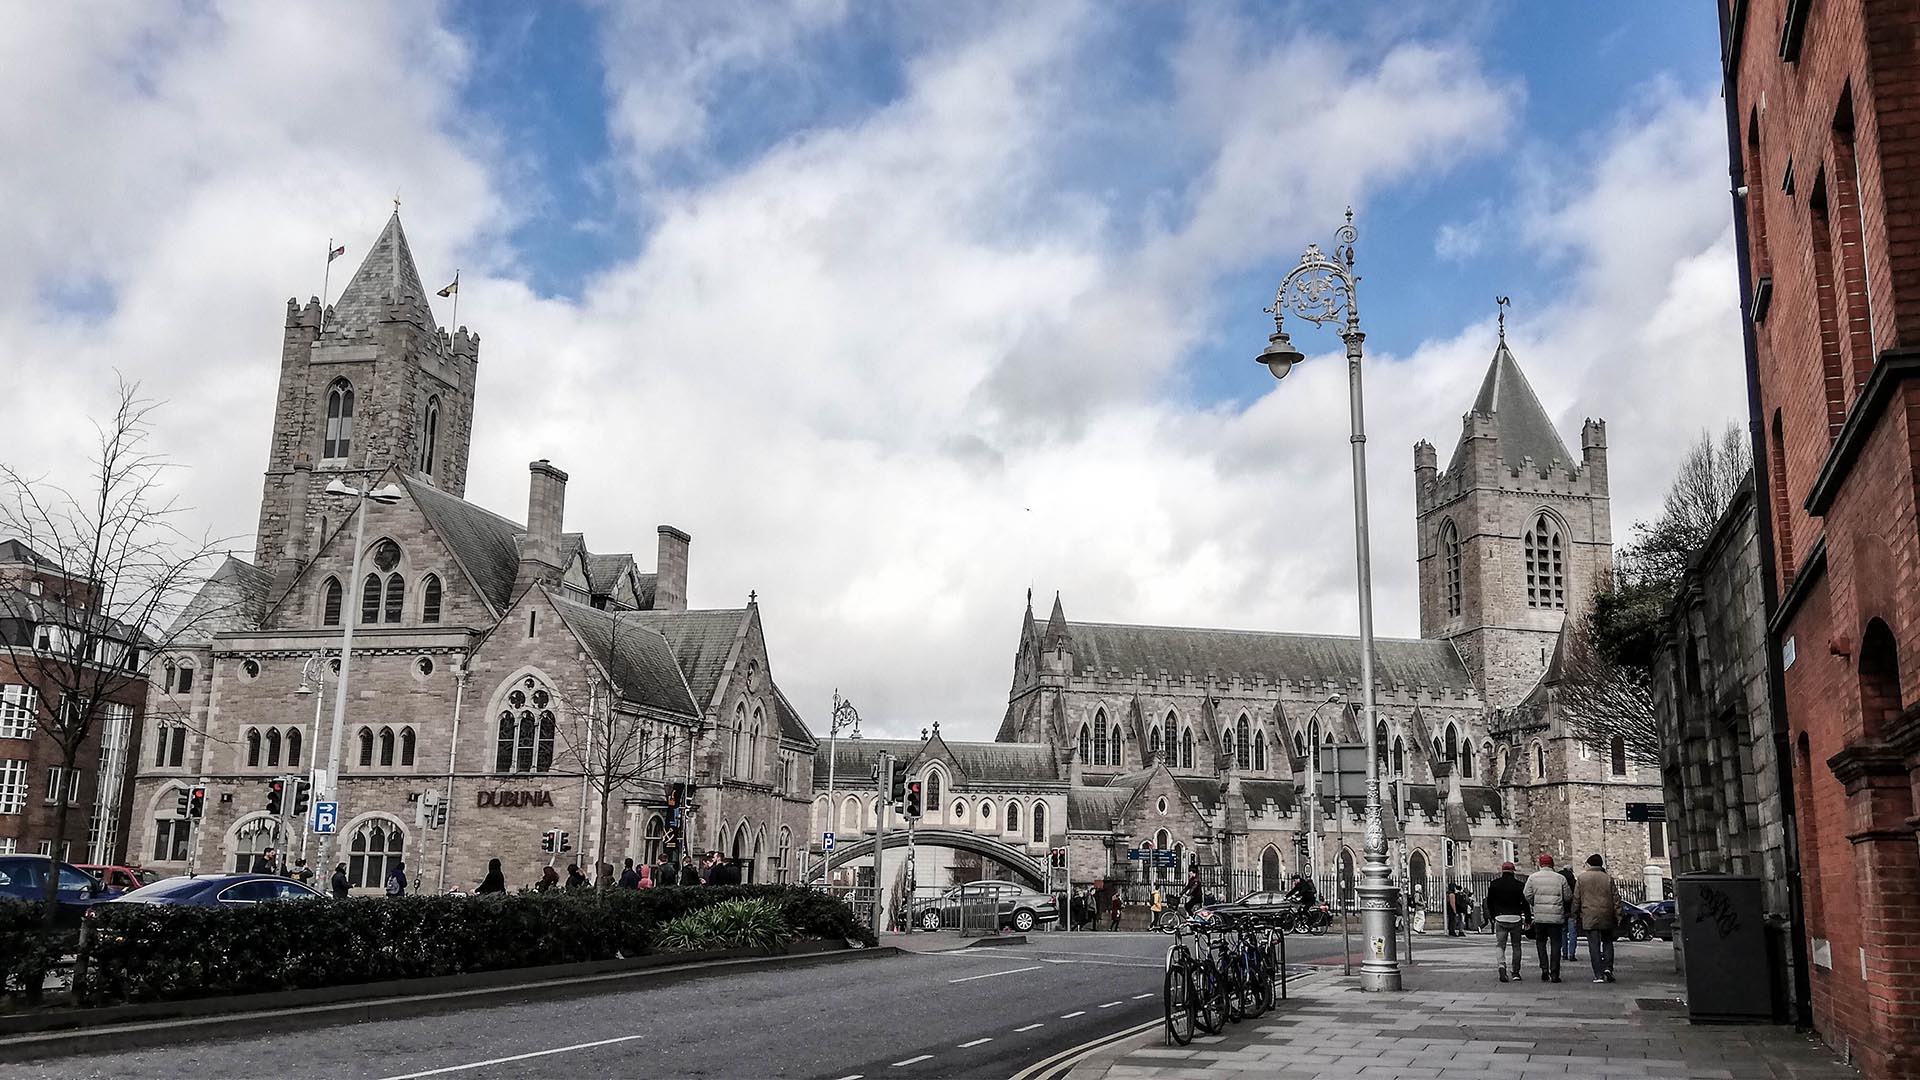 Christ Church Cathedral y Dublinia, Dublín, Irlanda